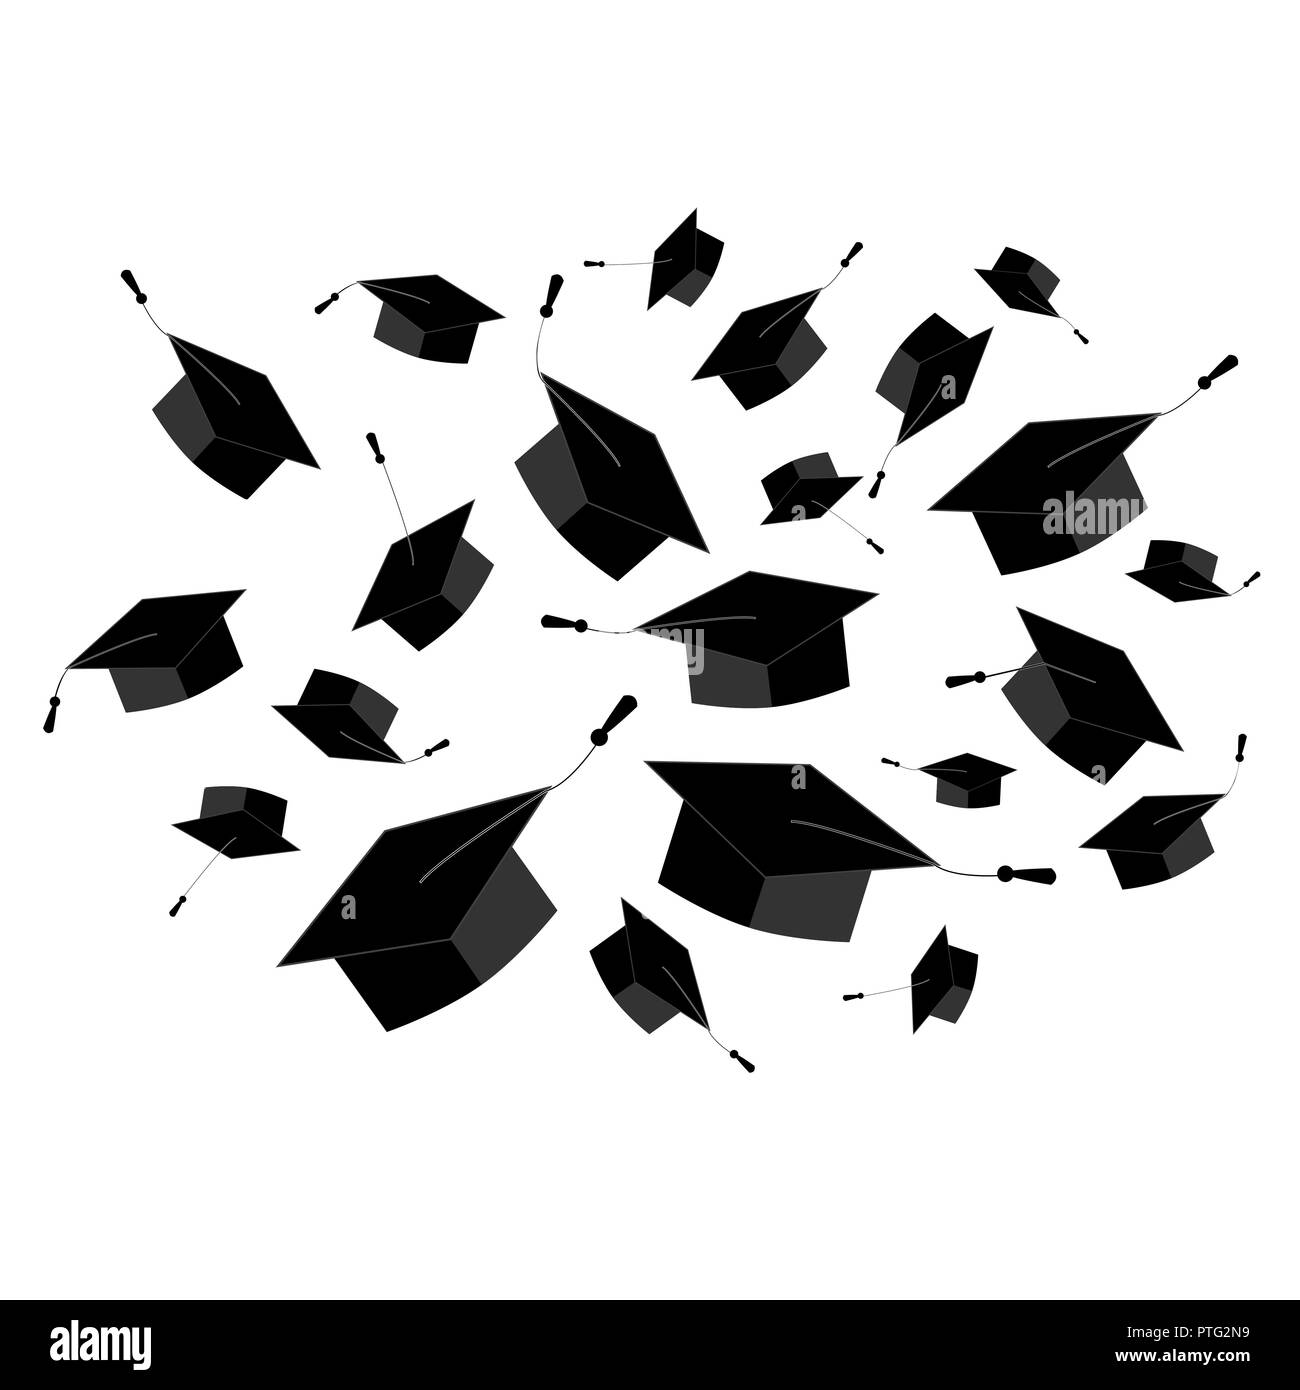 Graduation caps fliegen in der Luft in einem Moment der Feier. Abstrakte cloud Element für die Abschlussfeier Design. Vector Illustration, Schwarz und Weiß Stock Vektor